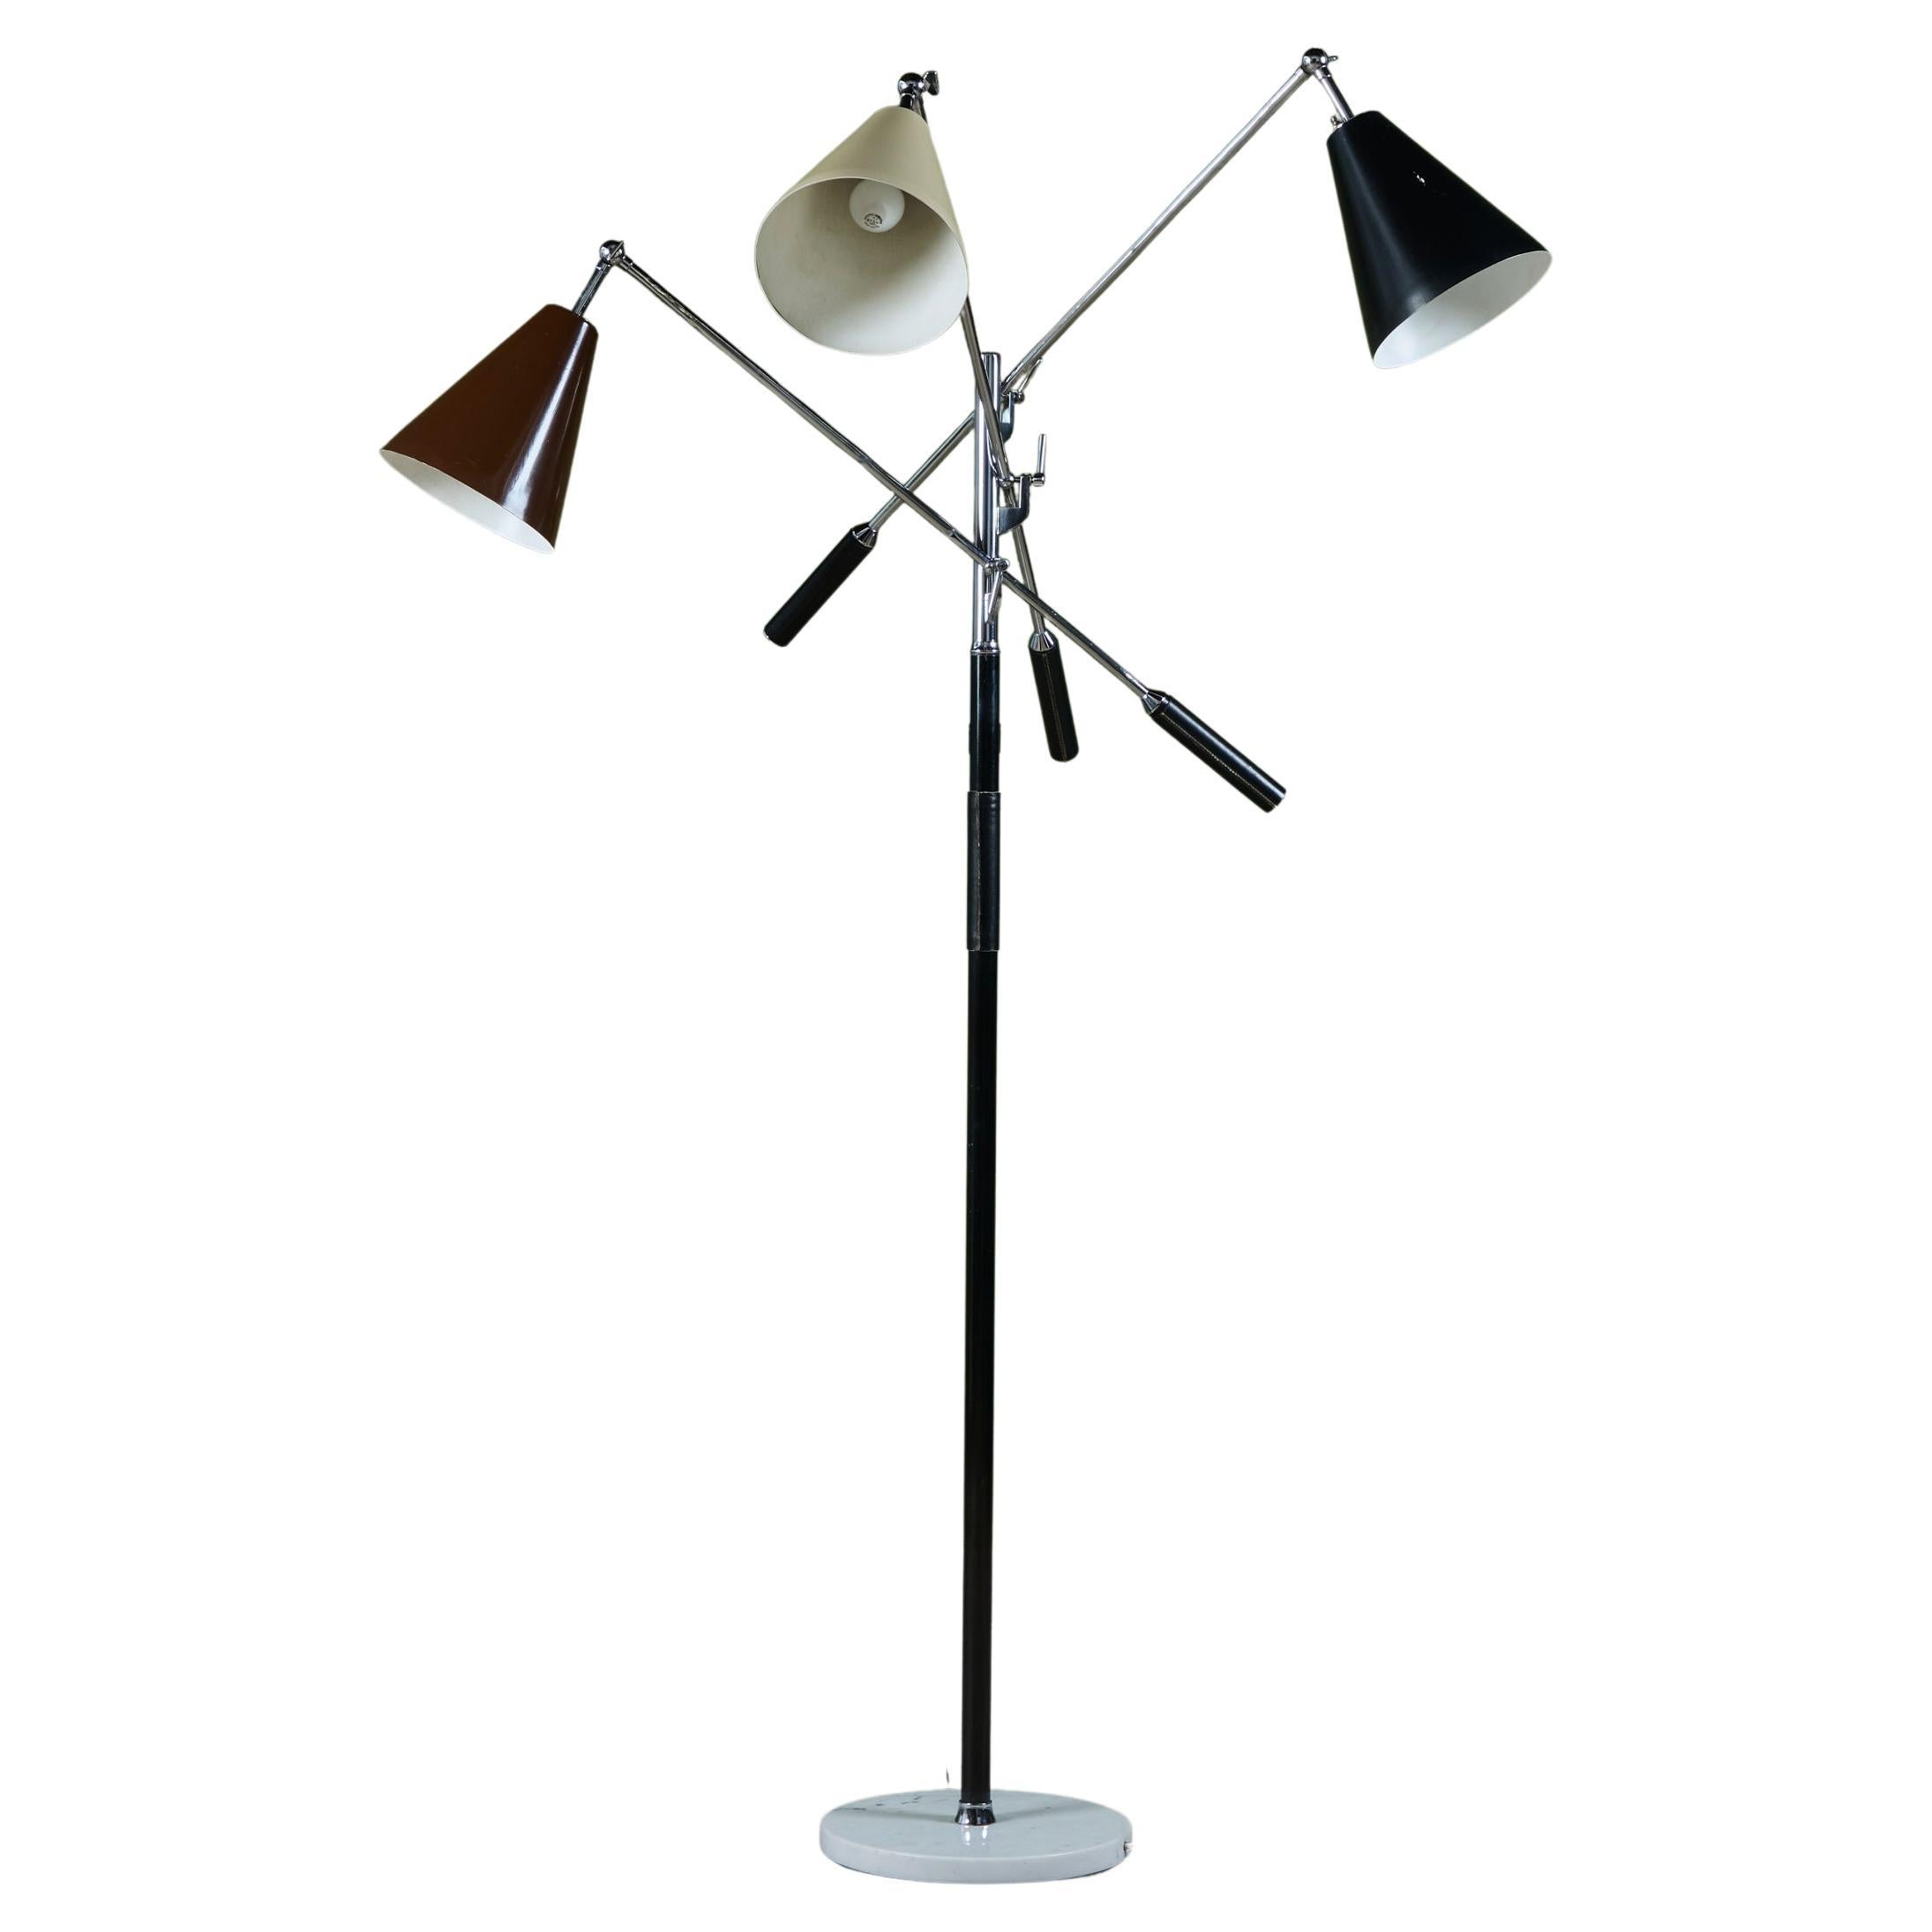 Gino Sarfatti Triennale Floor Lamp for Arteluce